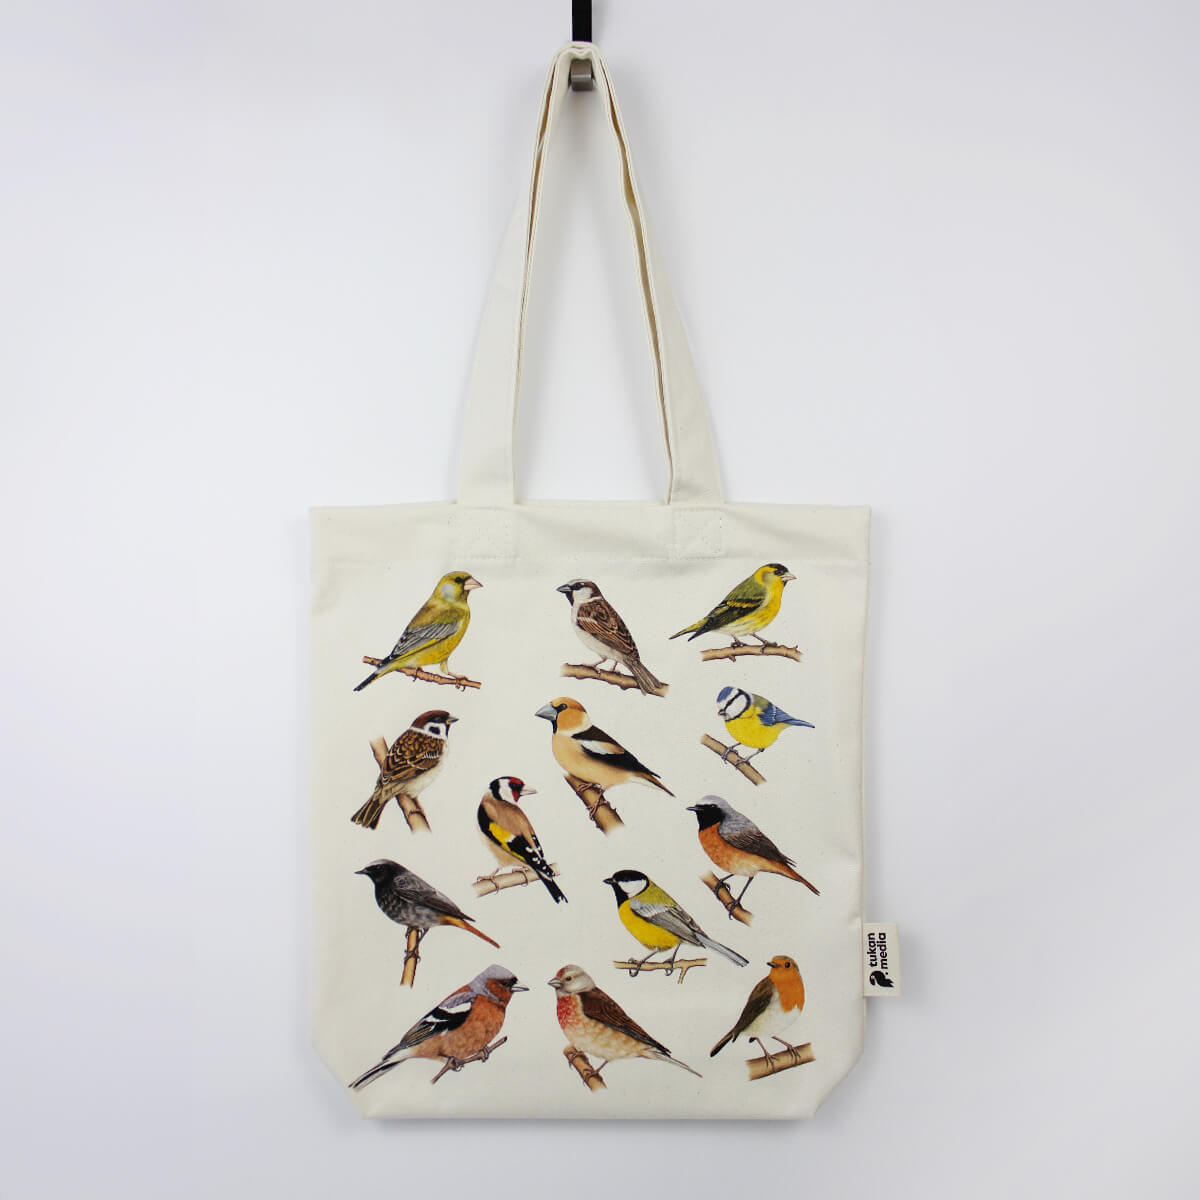 Bawełniana torby z ilustracjami 13 ptaków. Dzwoniec, wróbel, czyż, mazurek, szczygieł, grubodziób, modraszka, kopciuszek, pleszka, bogatka, zięba, makolągwa, rudzik. Widok z przodu